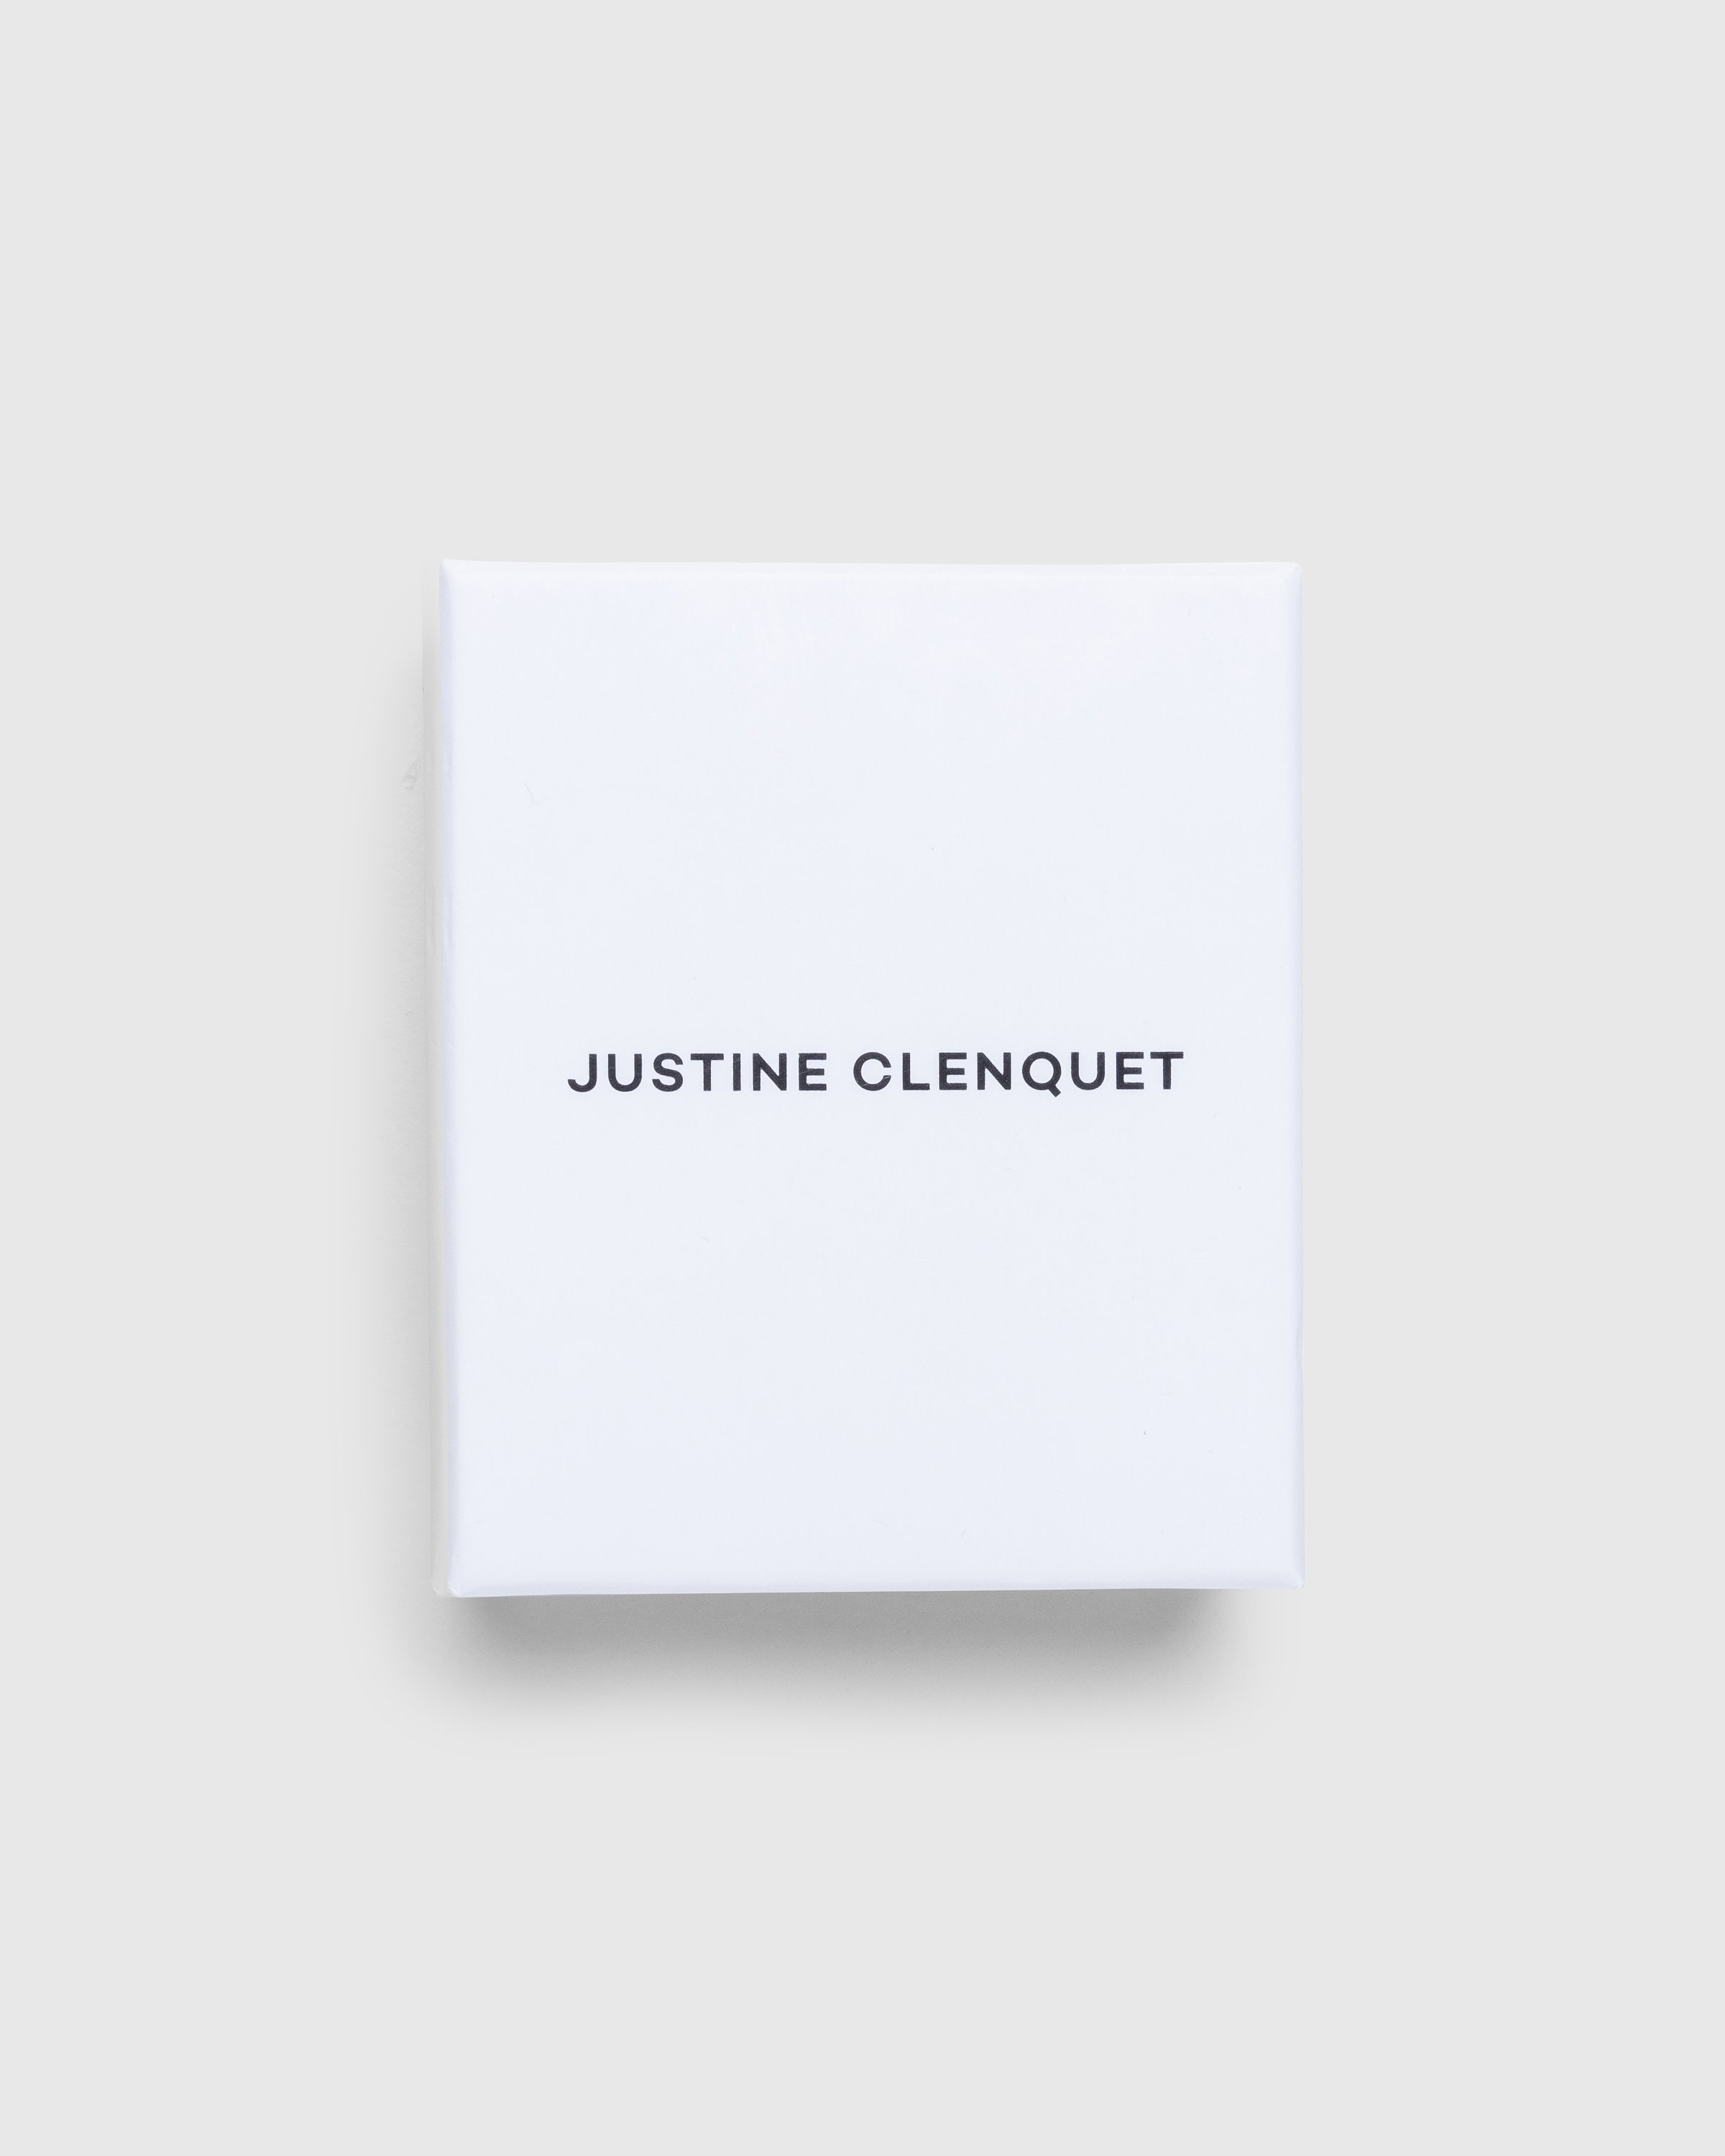 Justine Clenquet x Highsnobiety – Andrew Hair Clip | Highsnobiety Shop